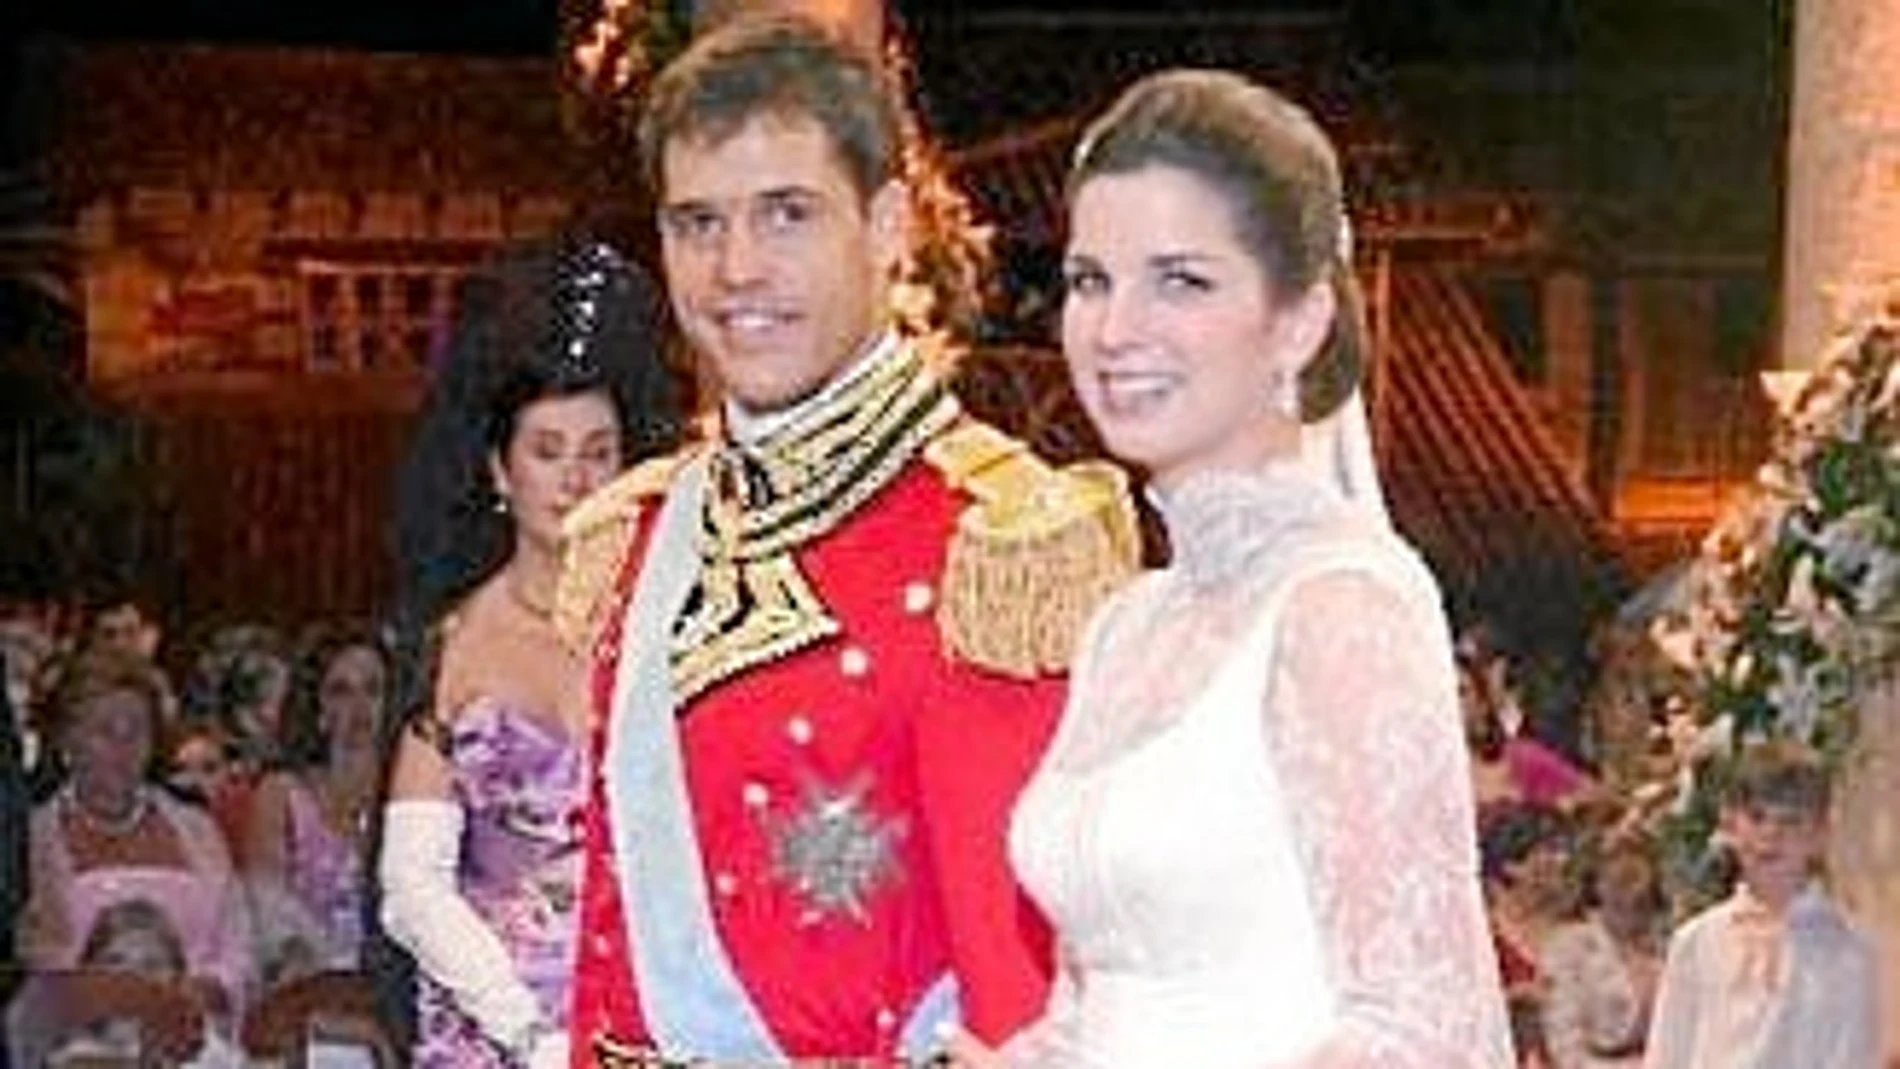 El pretendiente Luis Alfonso de Borbón, casado con Margarita Vargas, es el pretendiente legitimista al trono de Francia